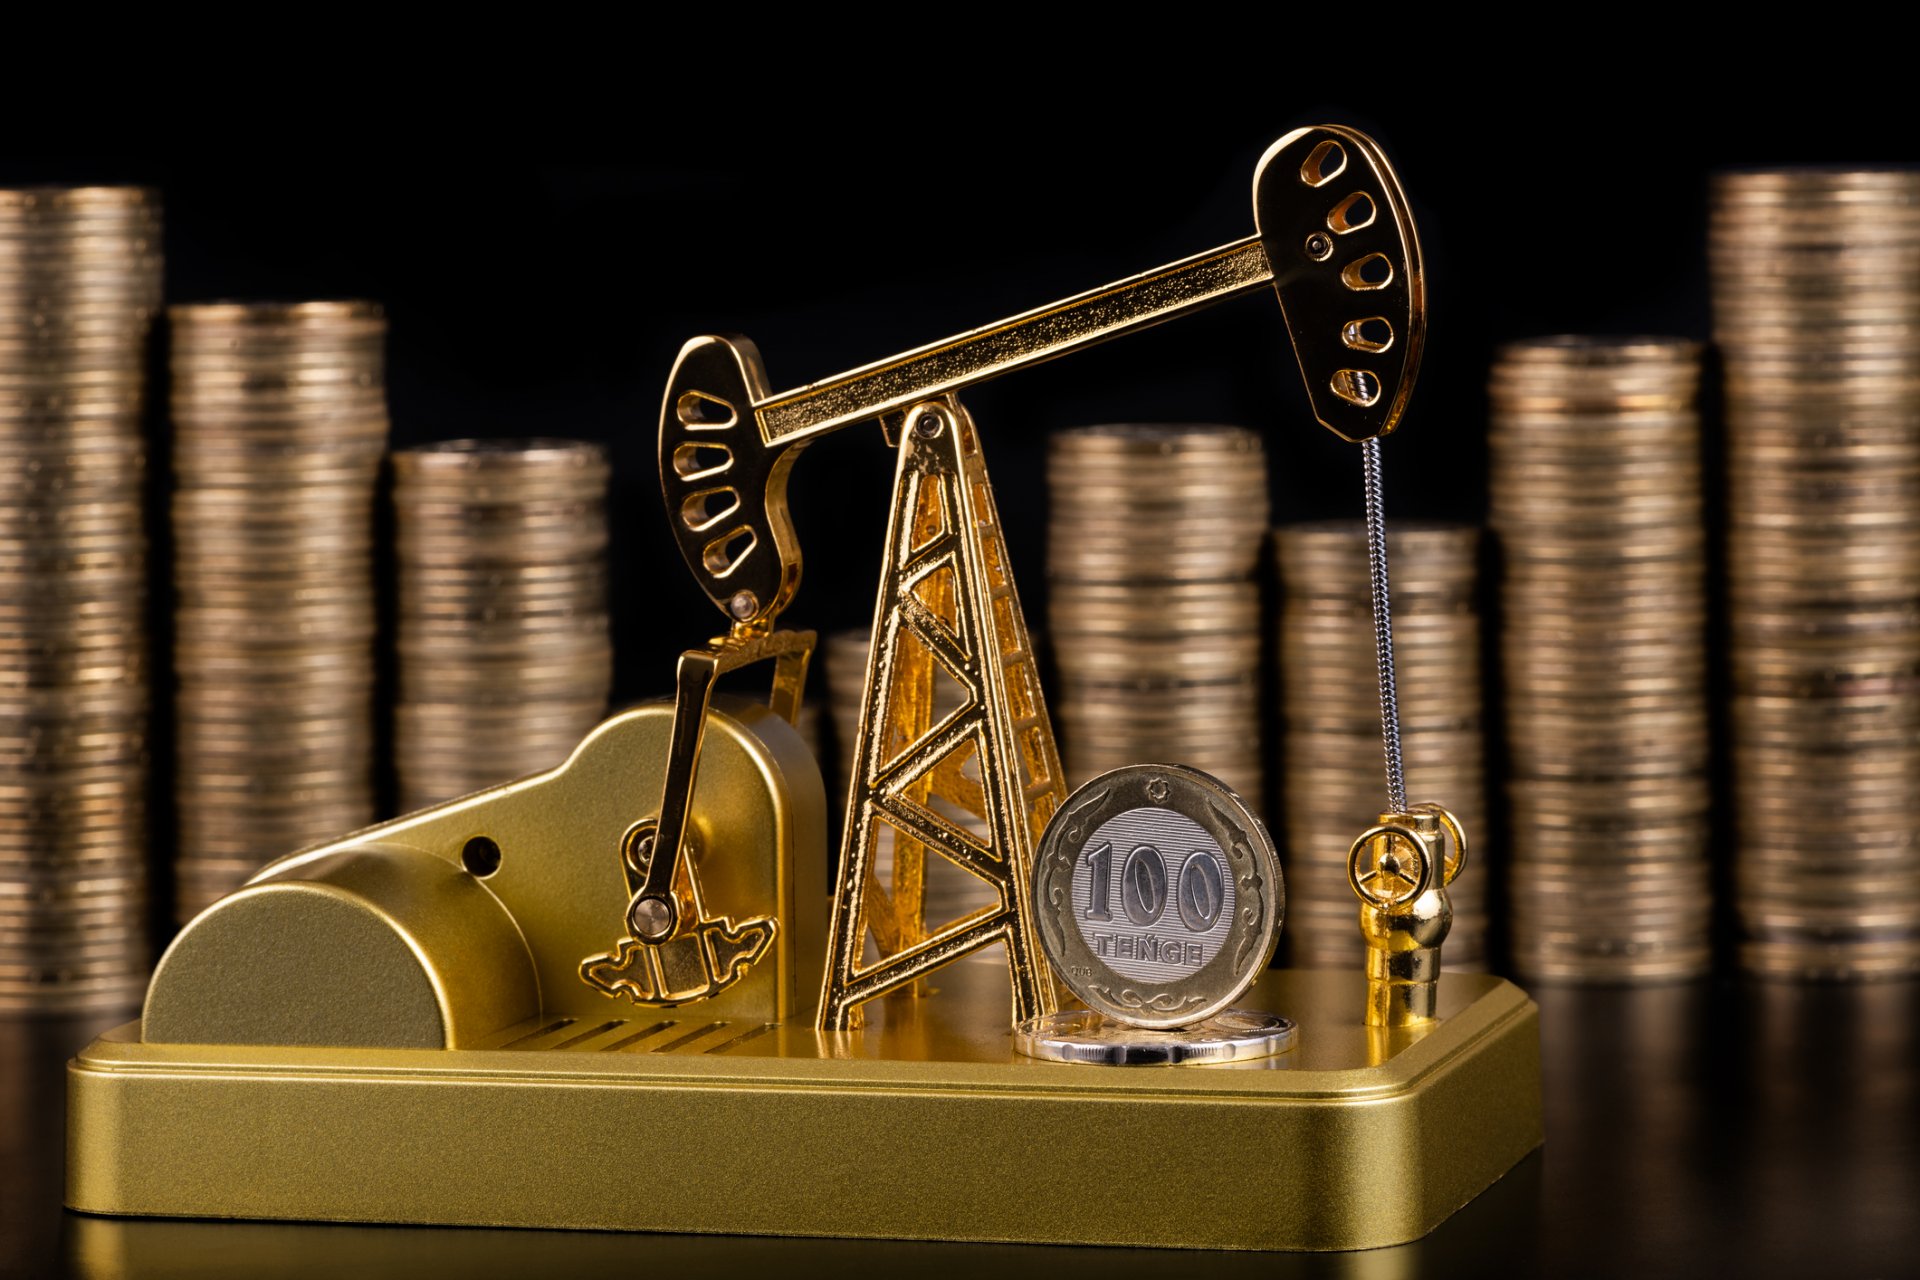 Илюстративно изображение на добив на петрол със златна сонда на фона на струпани в колони казахстански монети от по 100 тенге